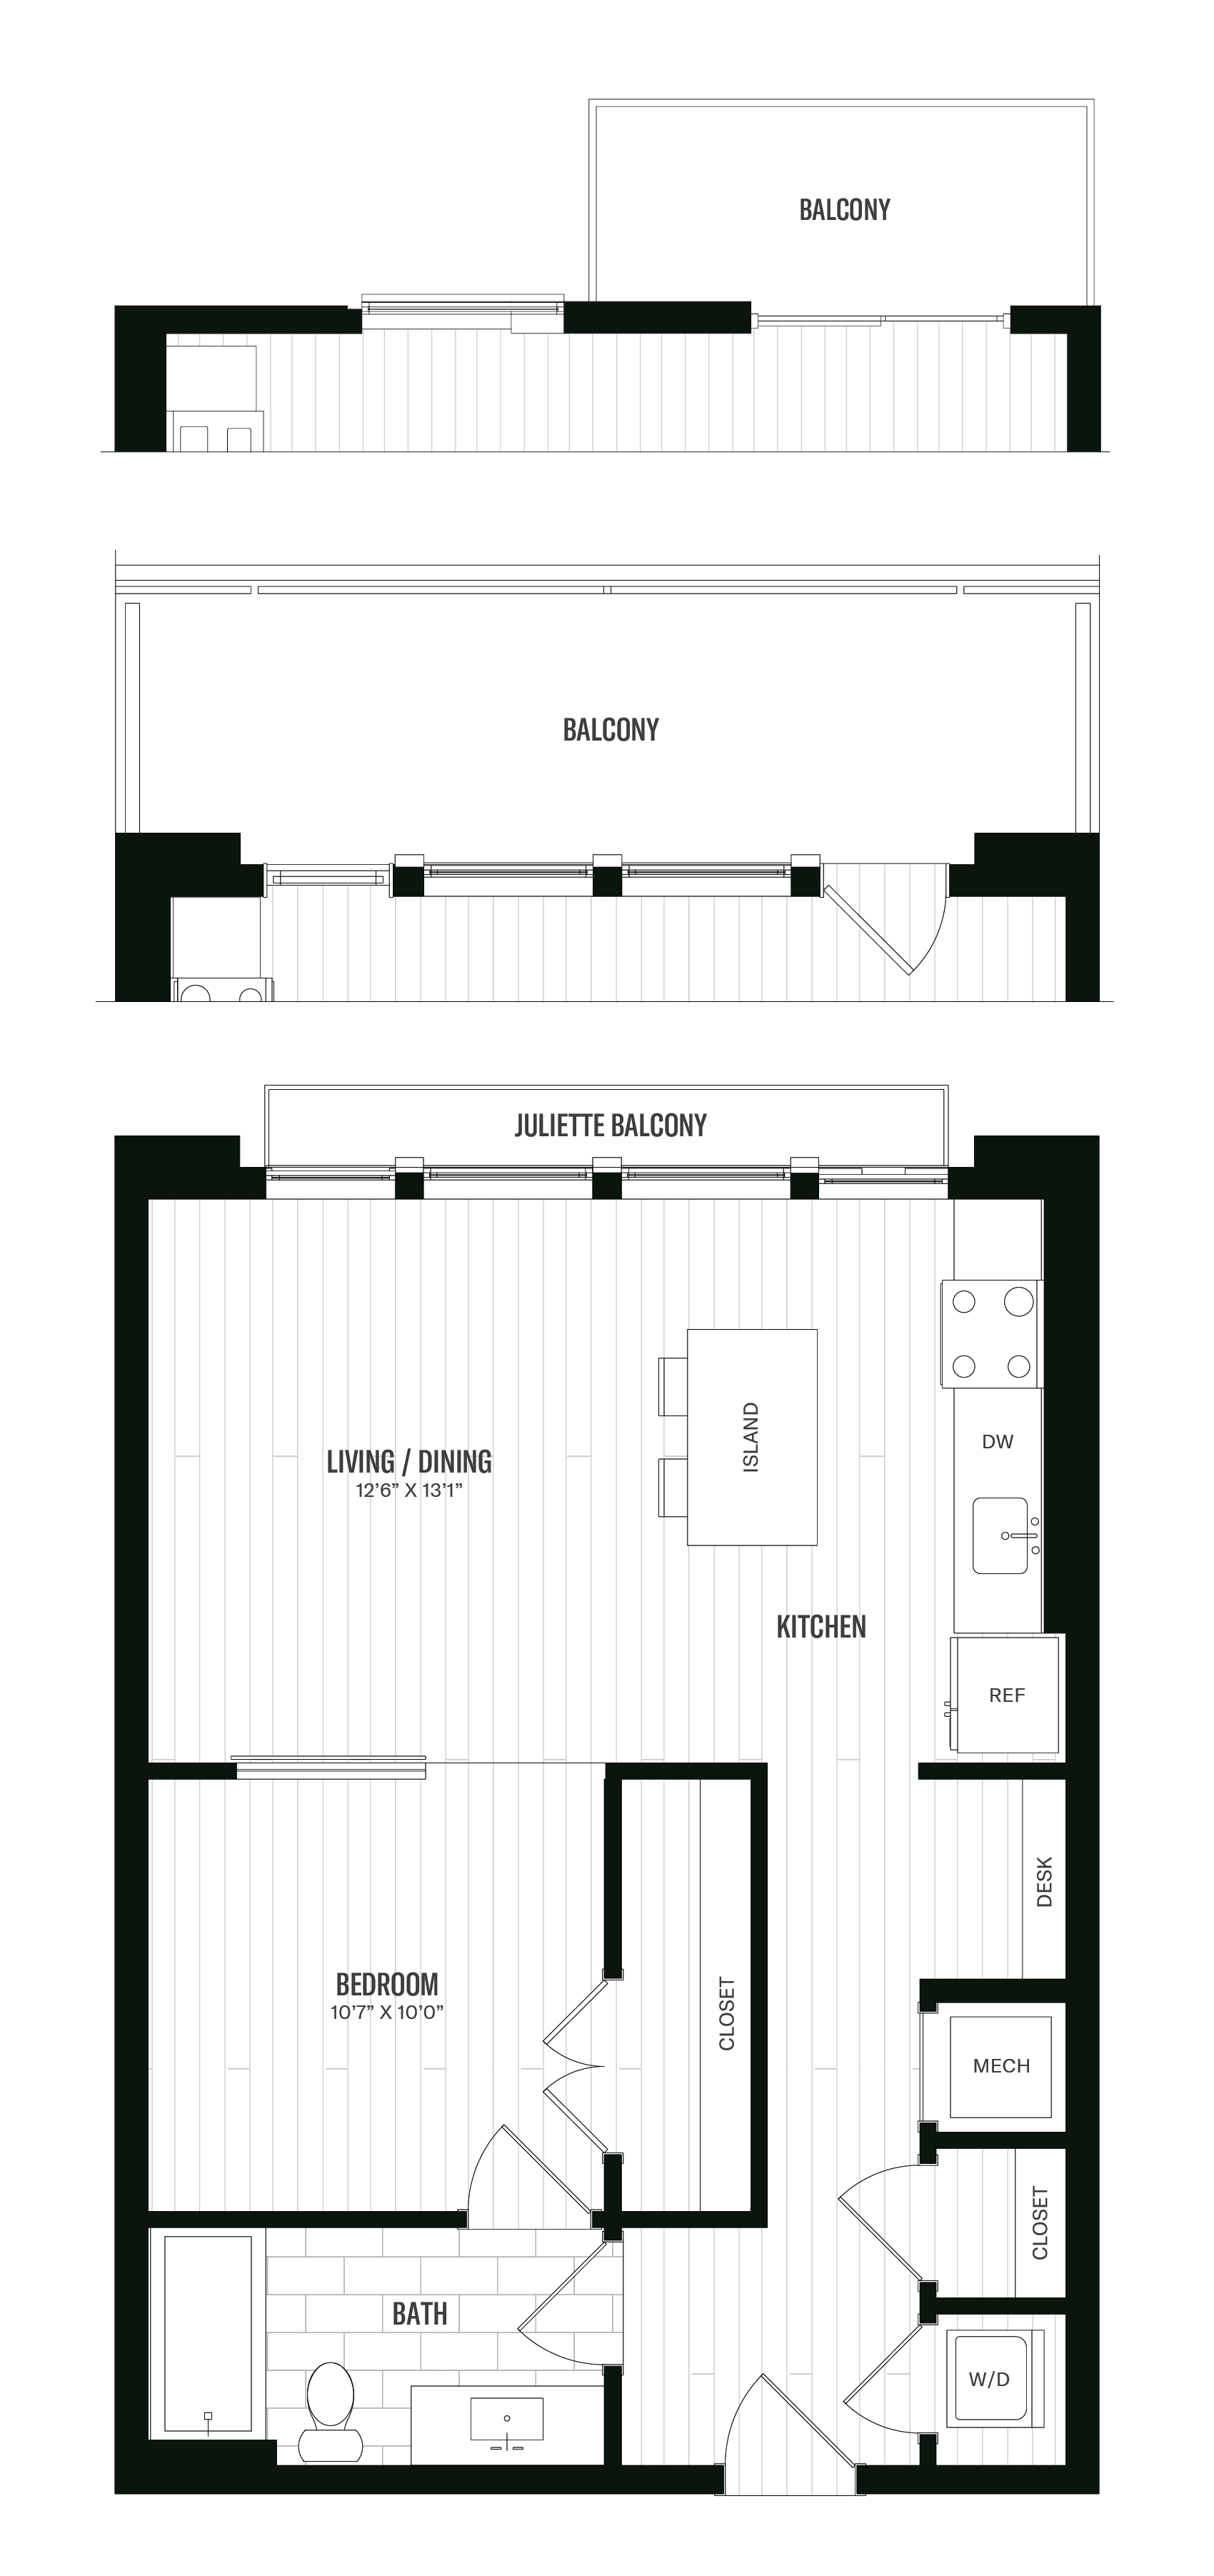 Floorplan image of unit 617